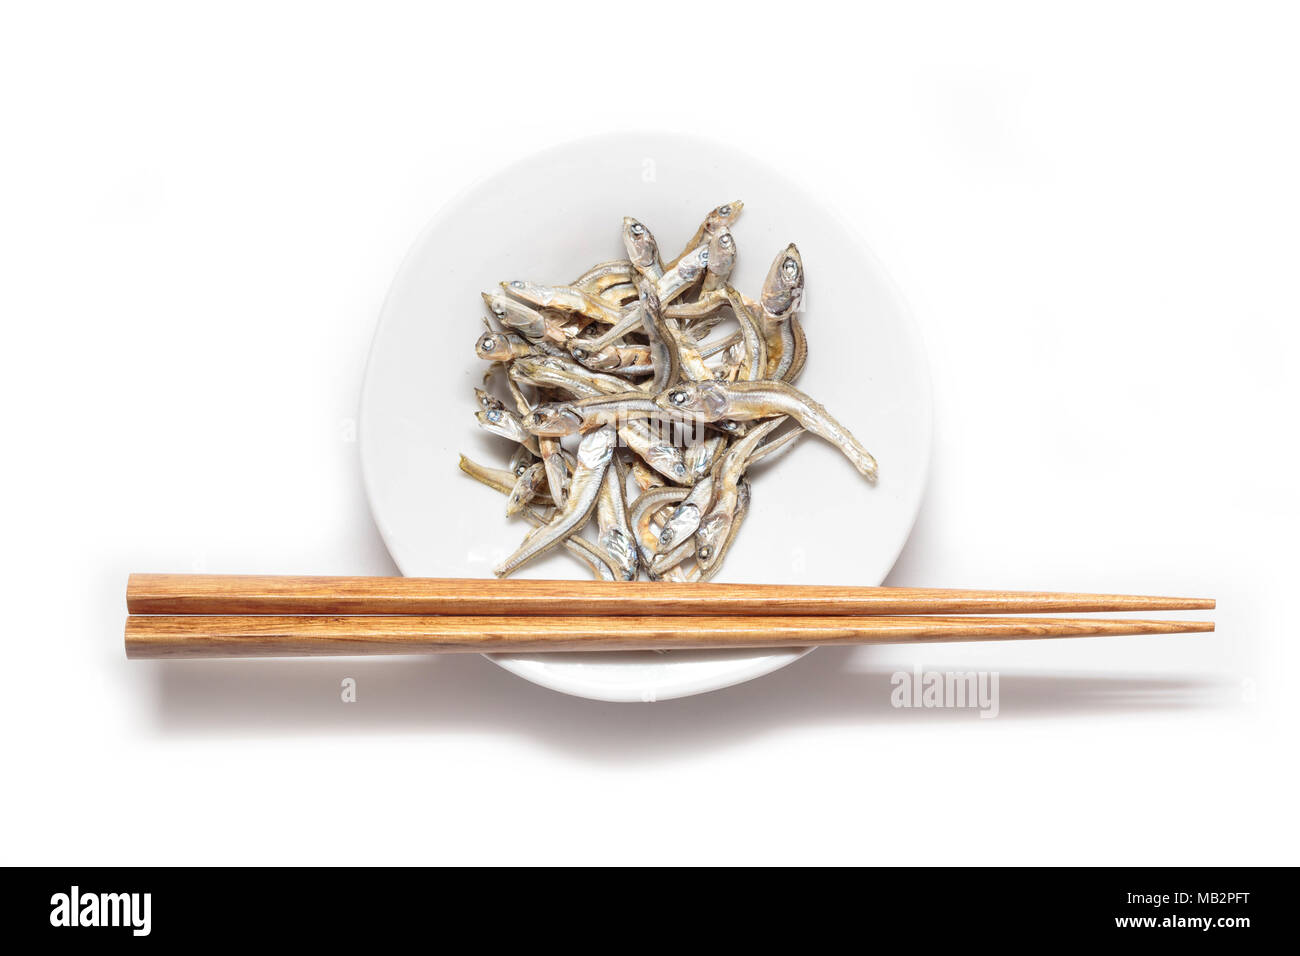 Séché japonaise avec des baguettes en bois sardine nourrisson isolé sur fond blanc. La cuisine japonaise. Collation santé alimentation. Niboshi Iriko ou poisson. Banque D'Images